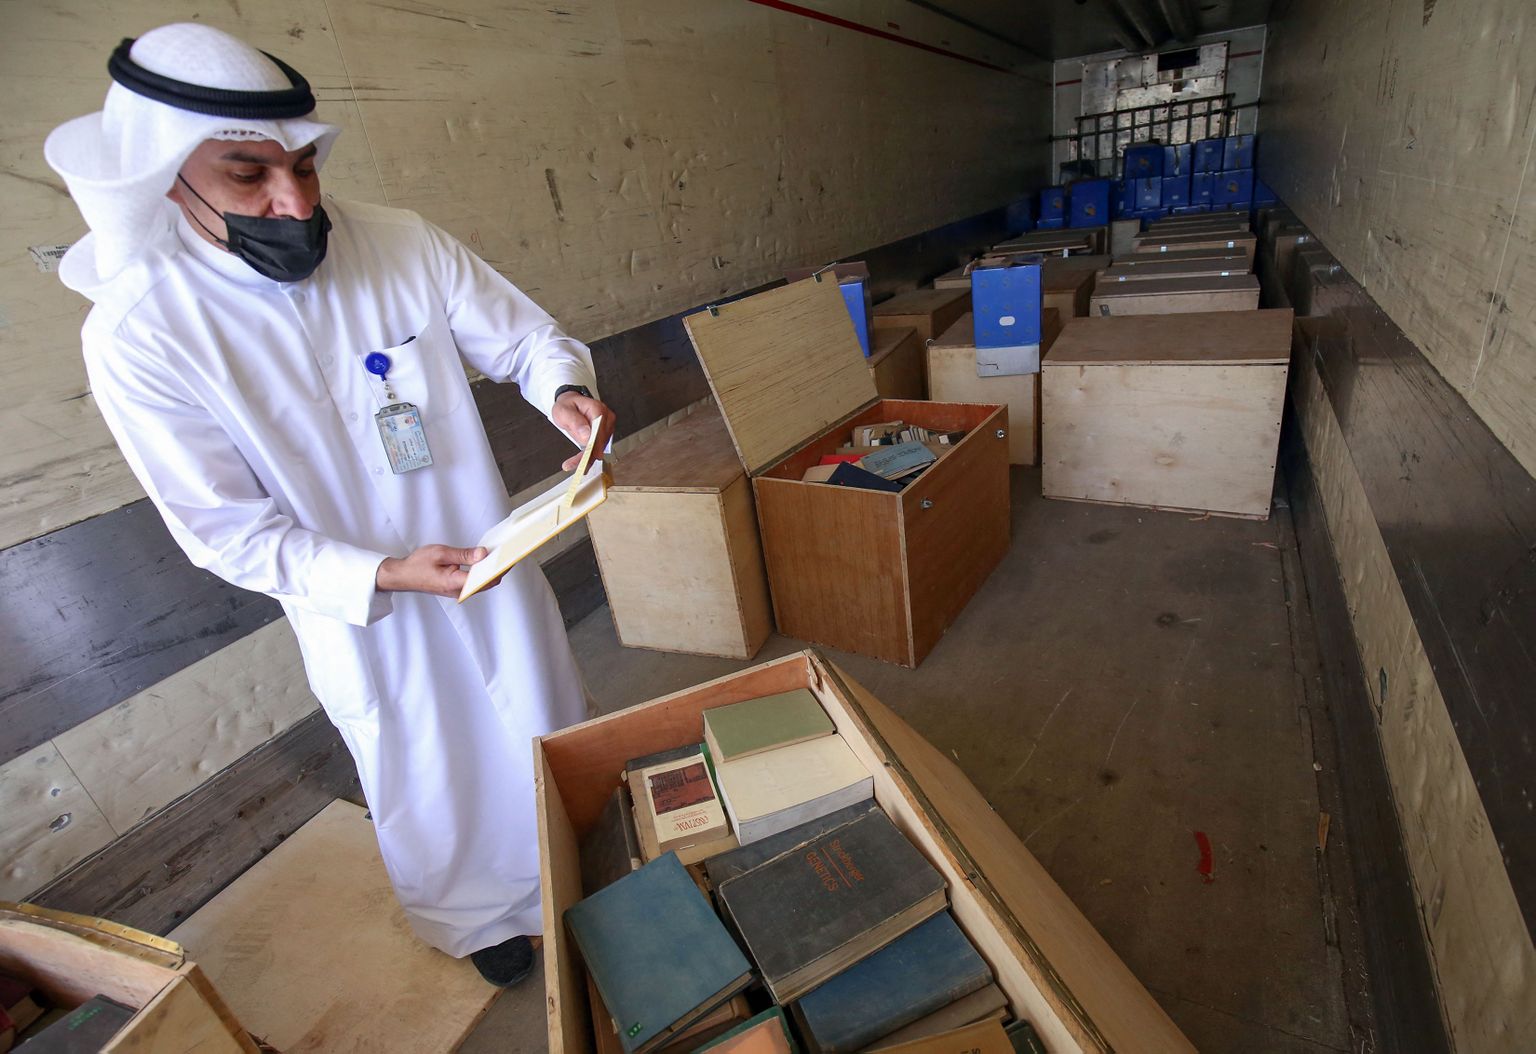 Kuveidi infoministeeriumi töötaja uurib kaste Kuveidi arhiivide raamatute ja dokumentidega, mille Iraak 1990. aasta invasiooni ajal kaasa viis ja nüüd tagastas.